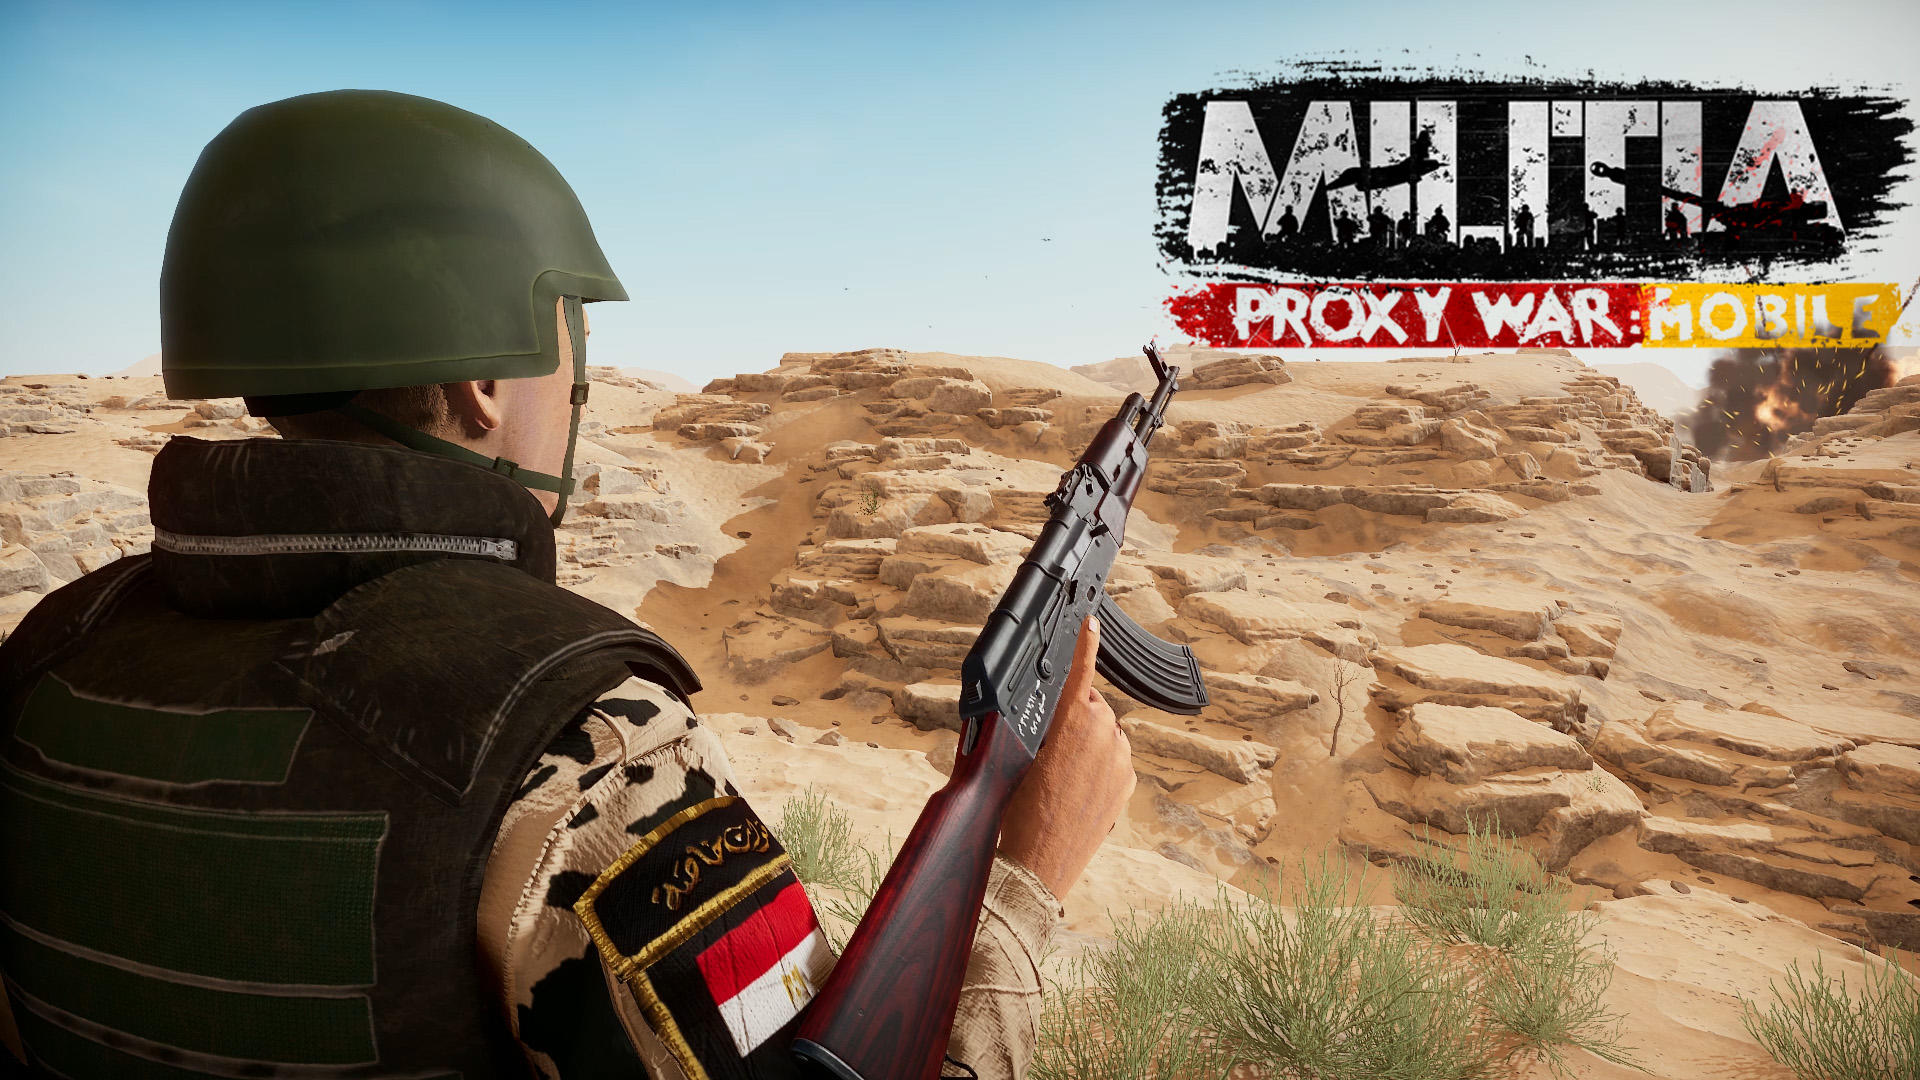 Banner of Militia Proxy War Mobile v0.02